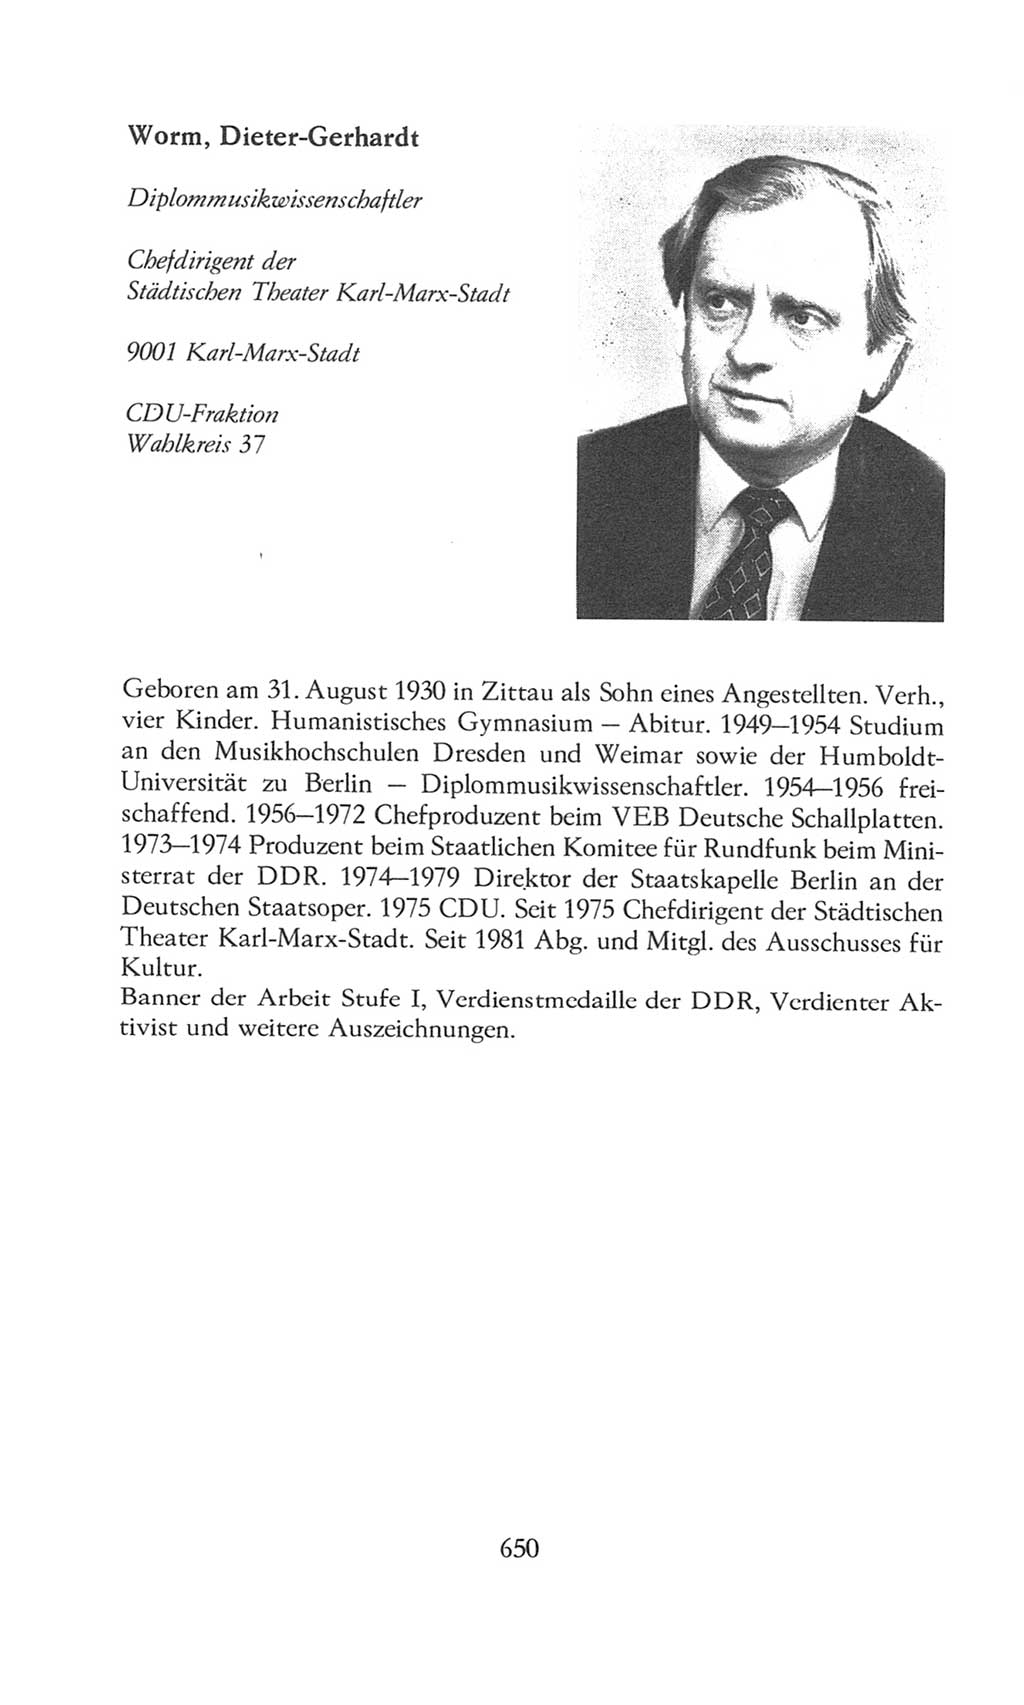 Volkskammer (VK) der Deutschen Demokratischen Republik (DDR), 8. Wahlperiode 1981-1986, Seite 650 (VK. DDR 8. WP. 1981-1986, S. 650)